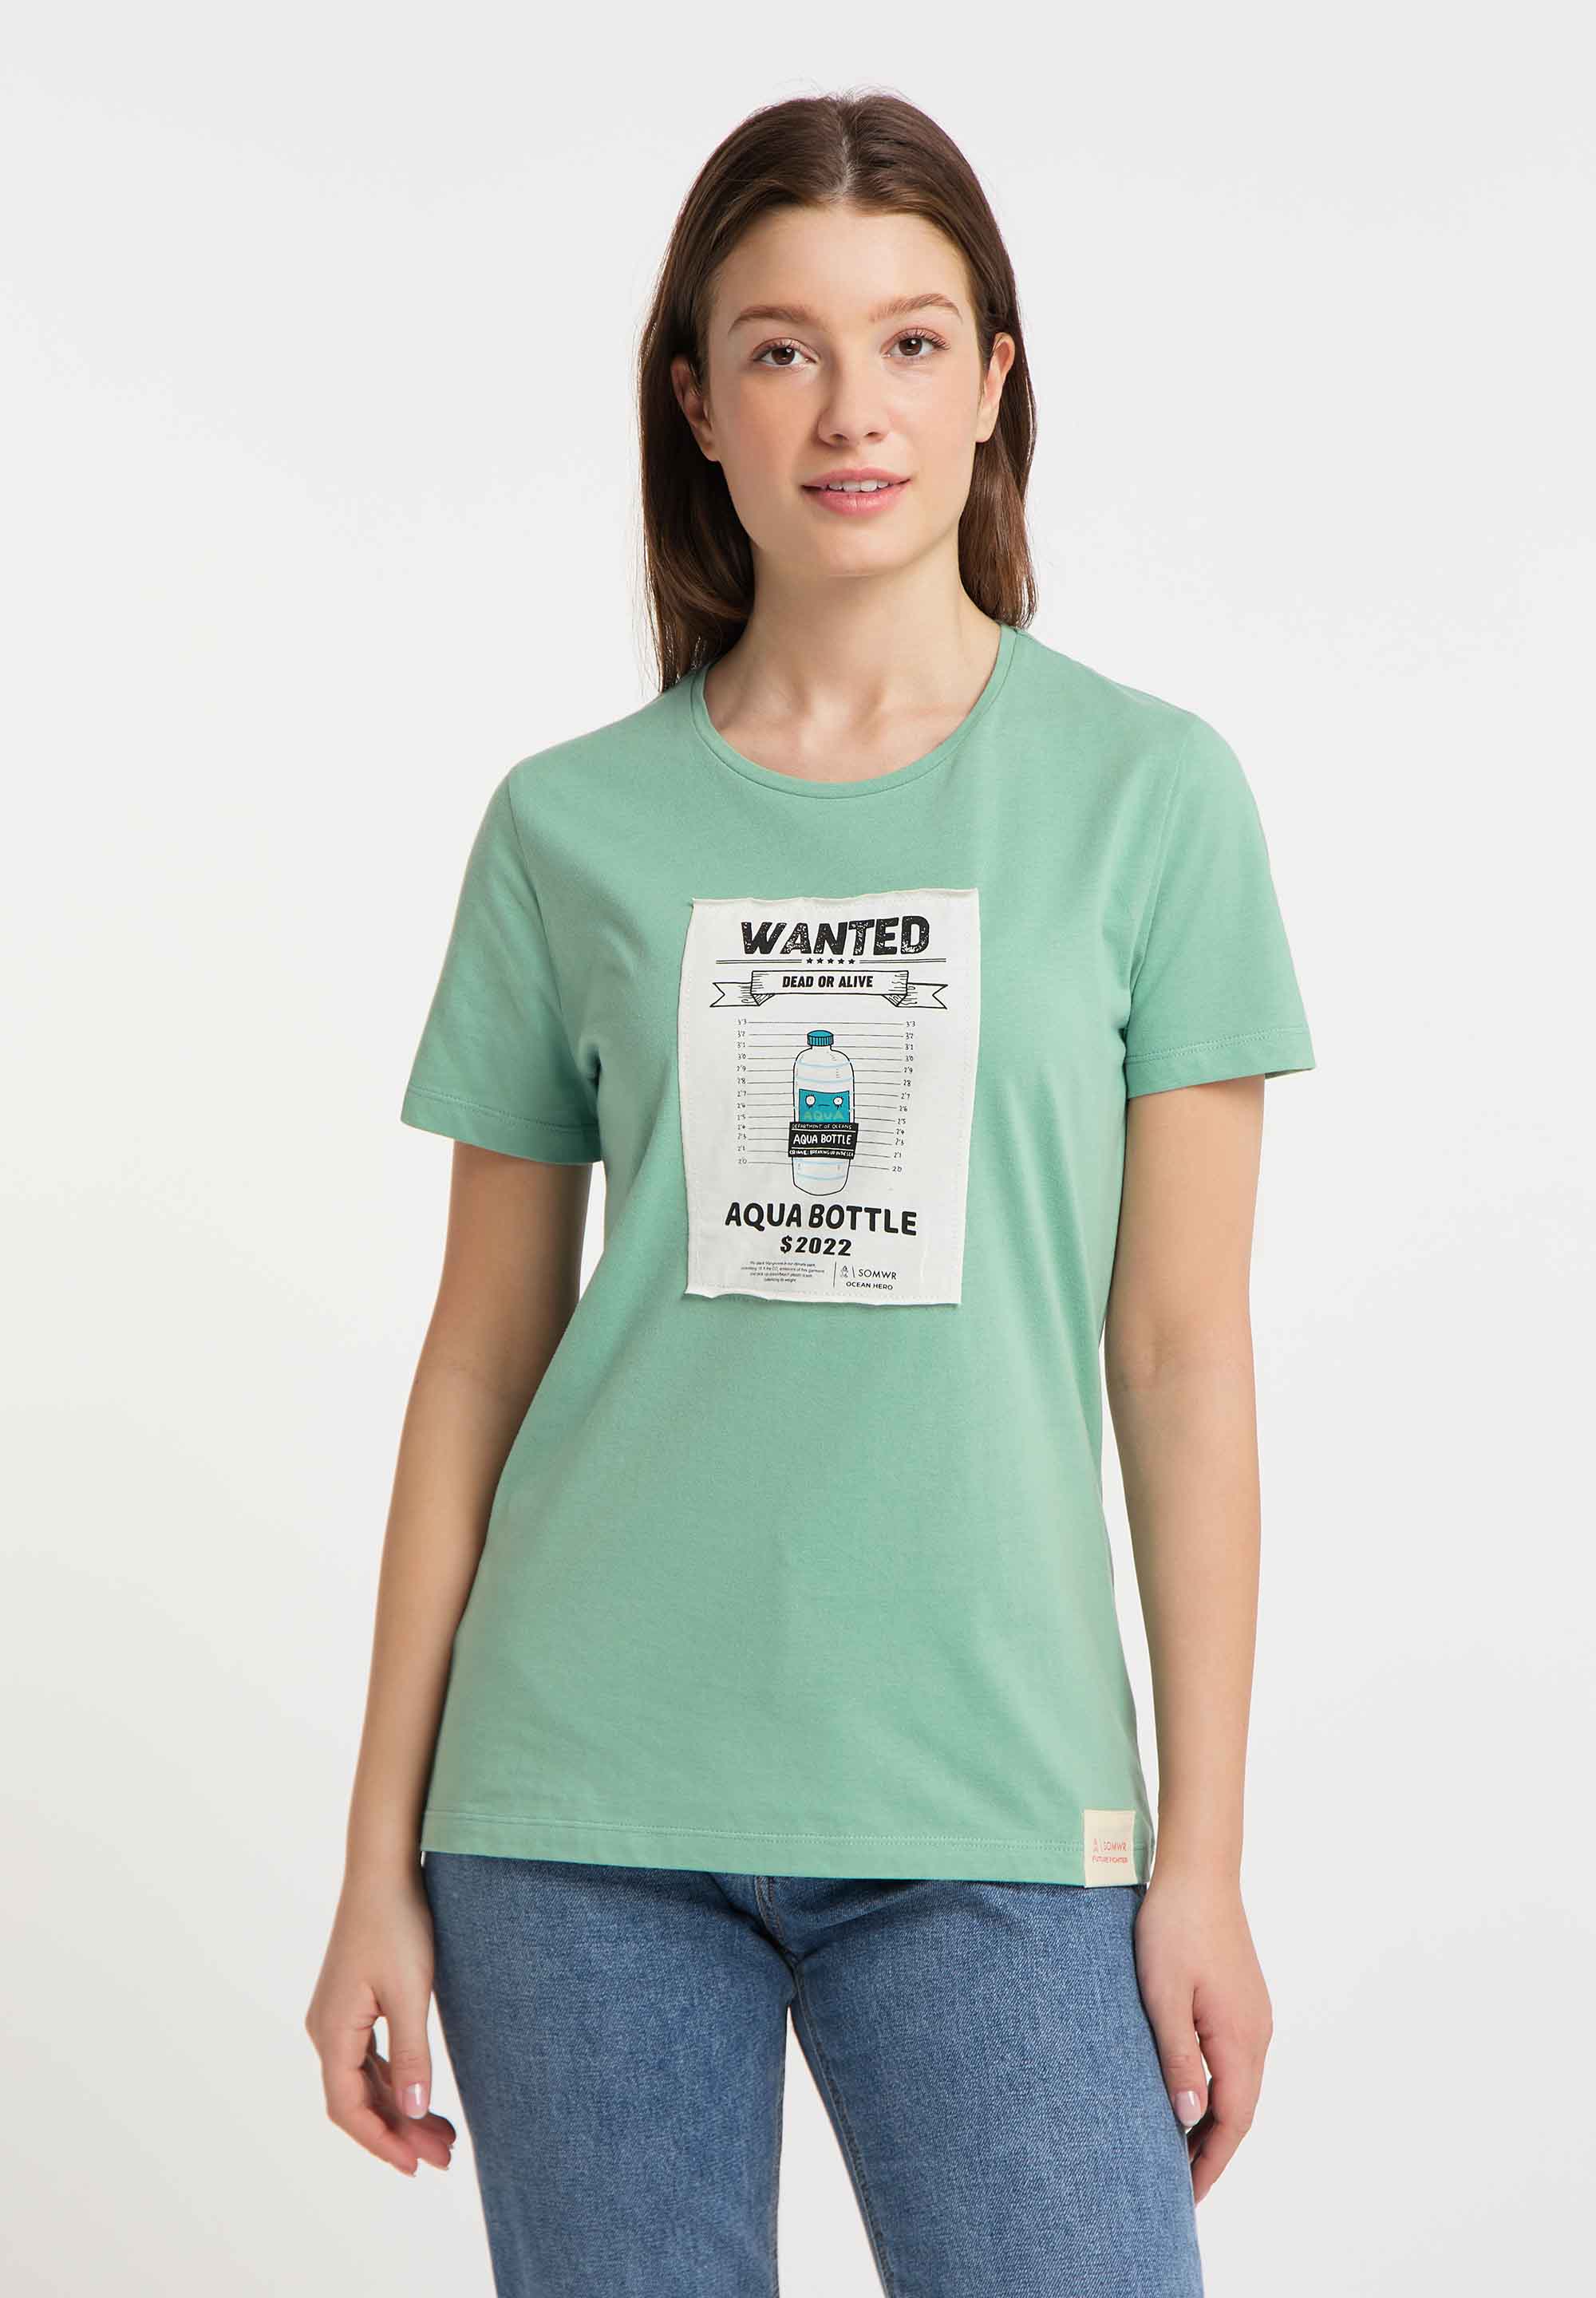 SOMWR SWINDLER T-Shirt GRE005